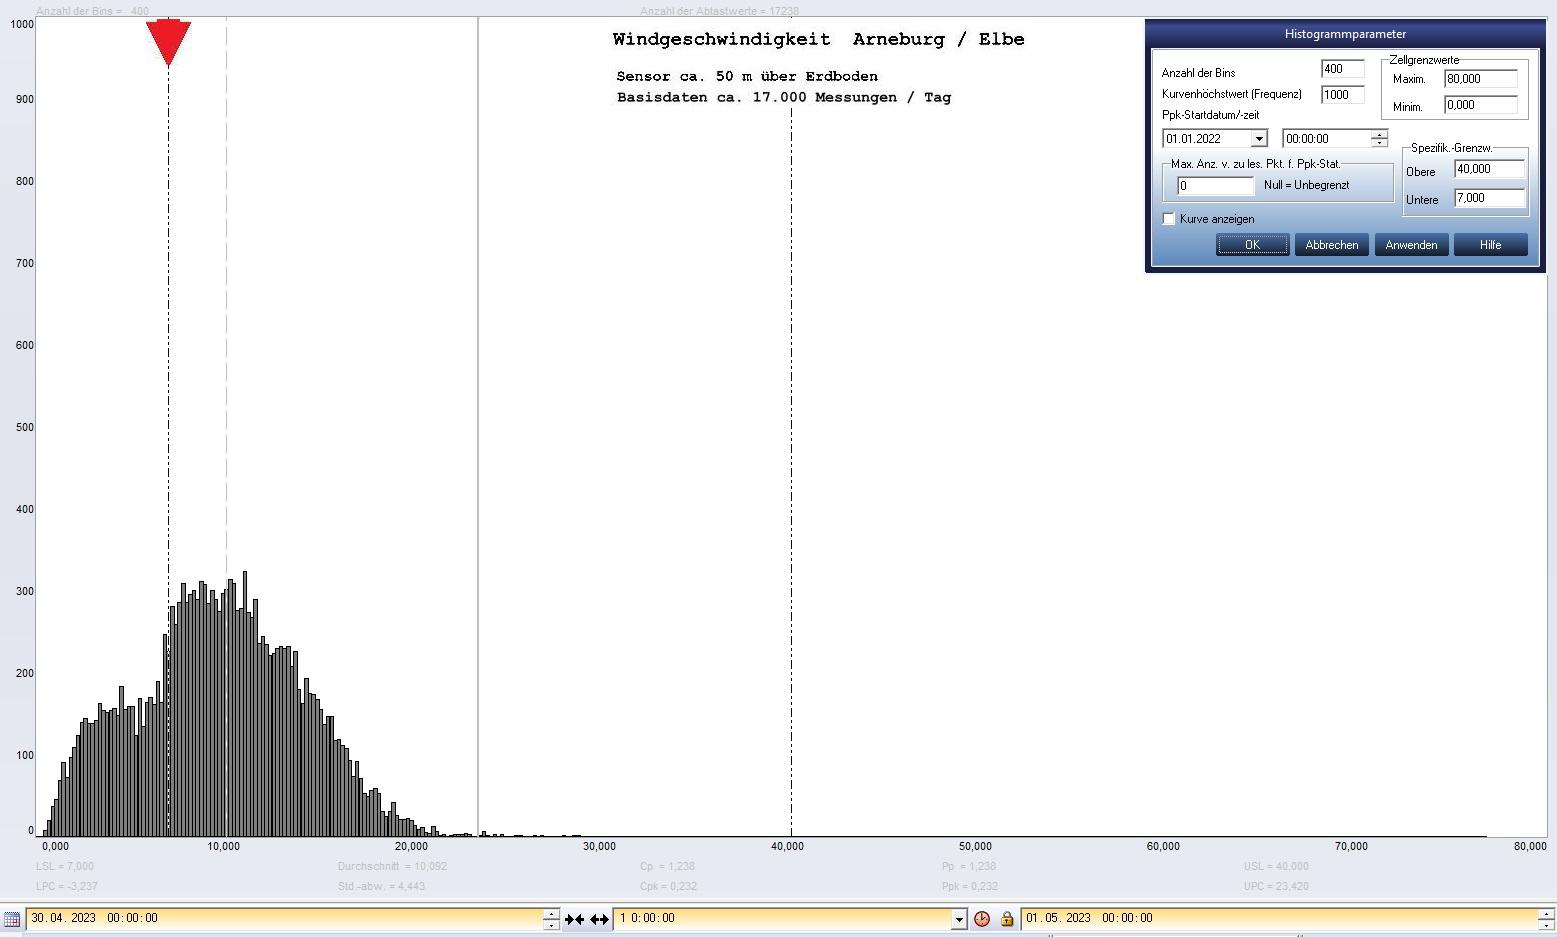 Arneburg Tages-Histogramm Winddaten, 30.04.2023
  Histogramm, Sensor auf Gebude, ca. 50 m ber Erdboden, Basis: 5s-Aufzeichnung